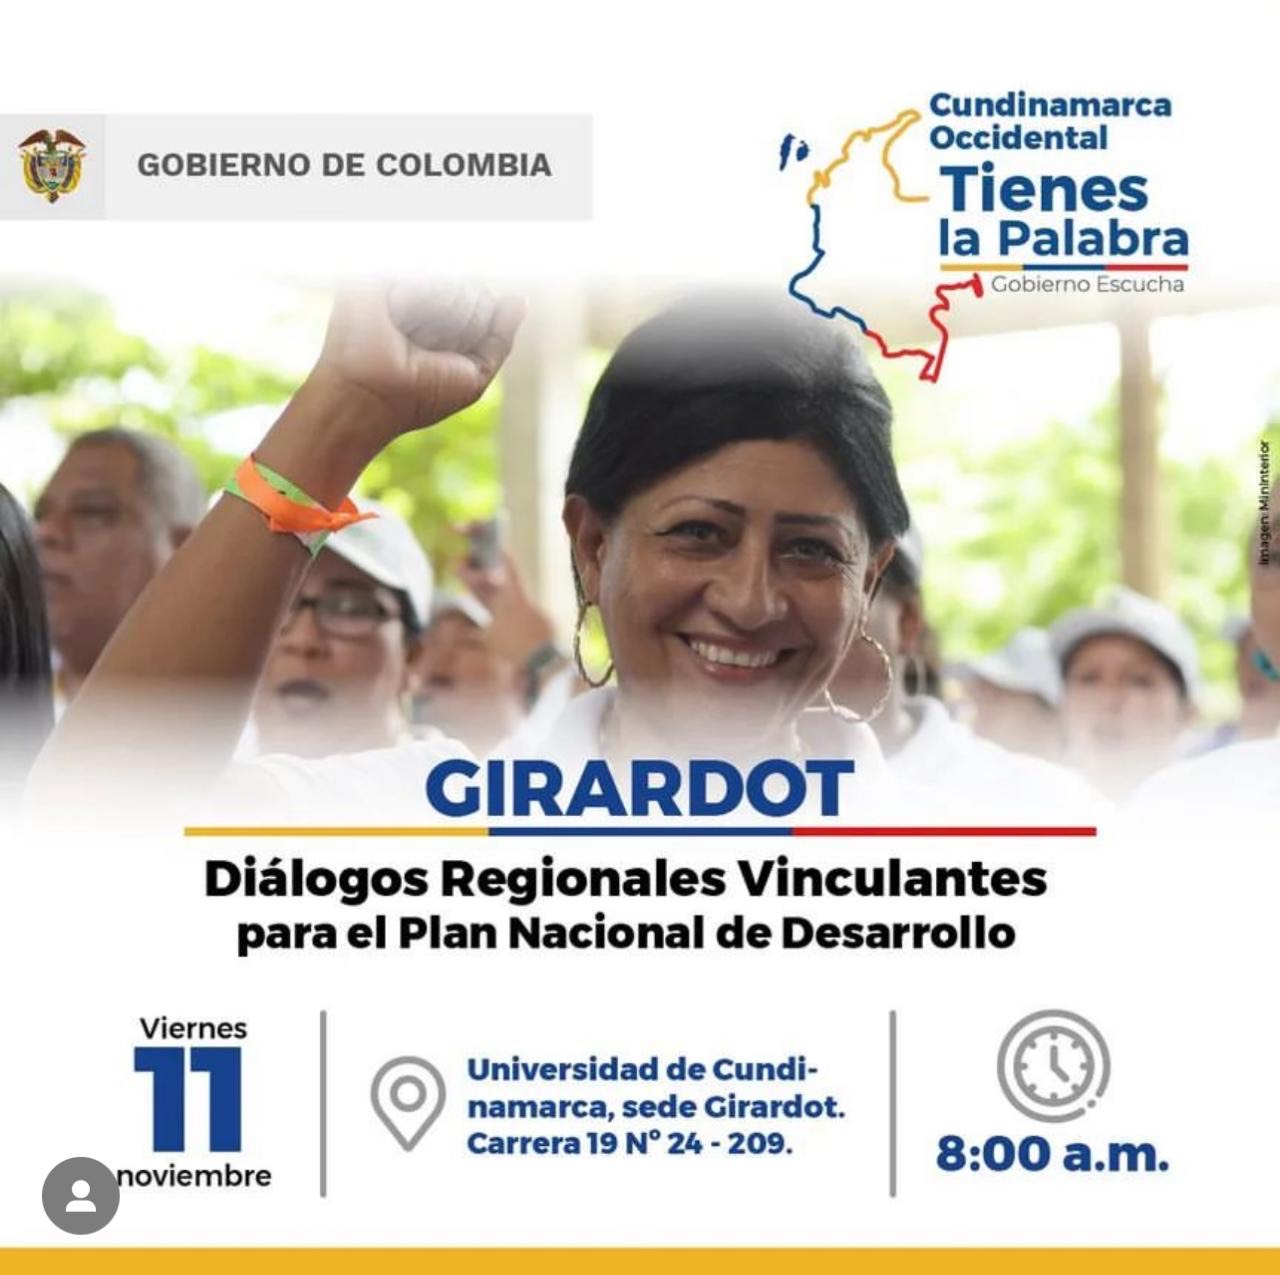 Los Diálogos Regionales Vinculantes llegan a Girardot